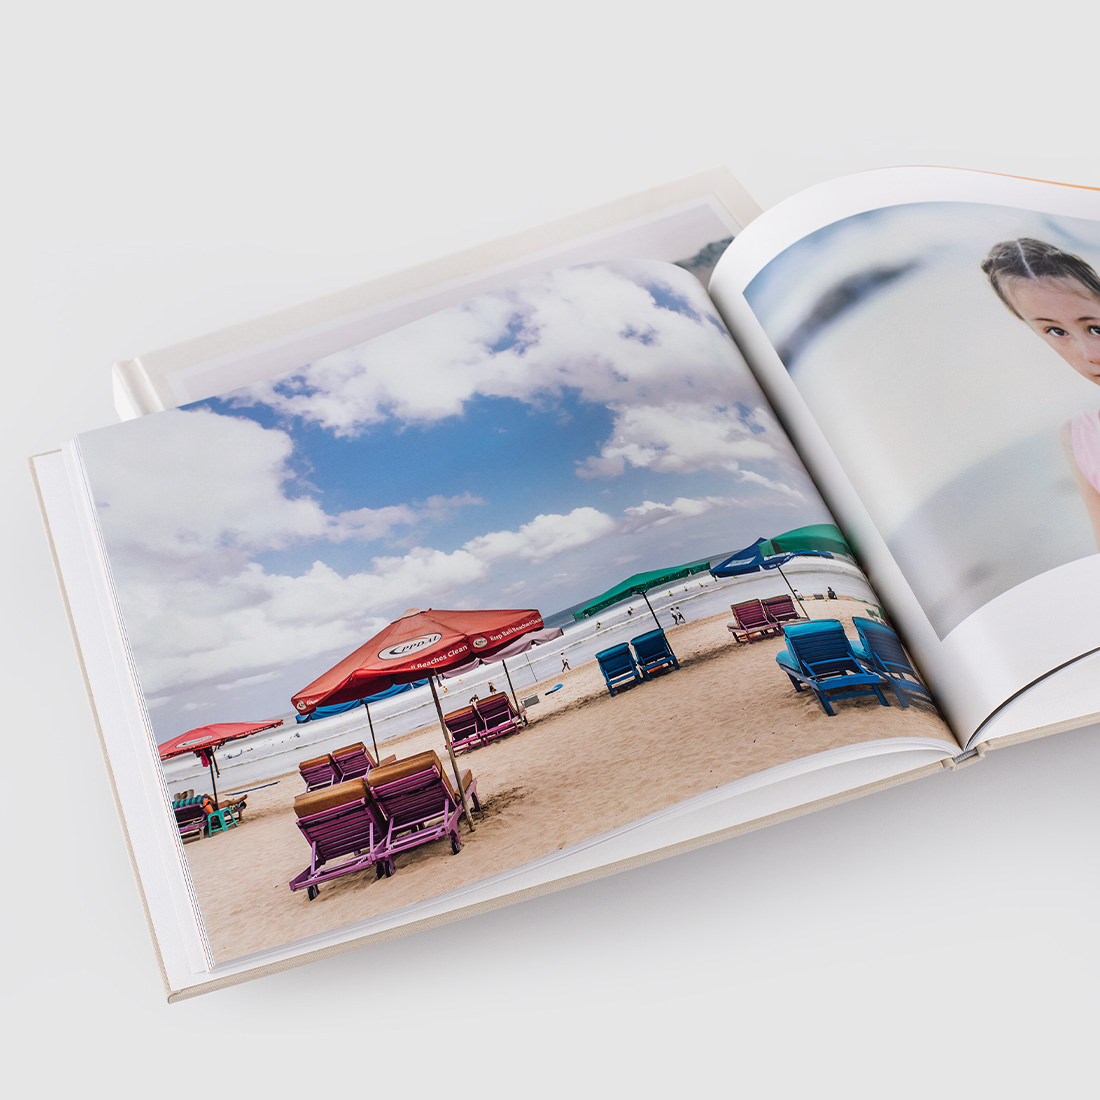 Le livre photo classique s'ouvre et affiche l'image de la plage.